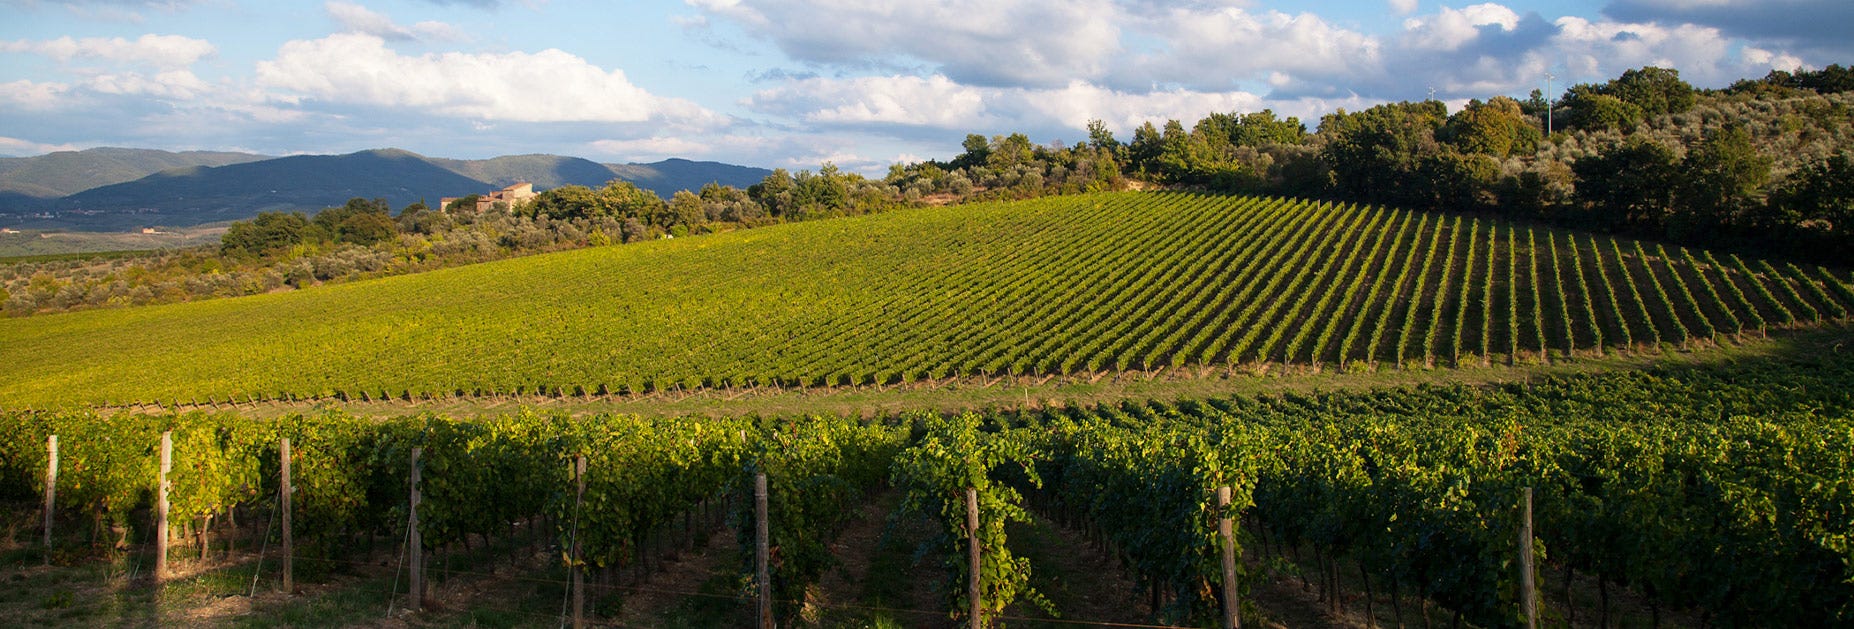 Blick über die weiten Reben des Weingutes Pèppoli in der Toskana